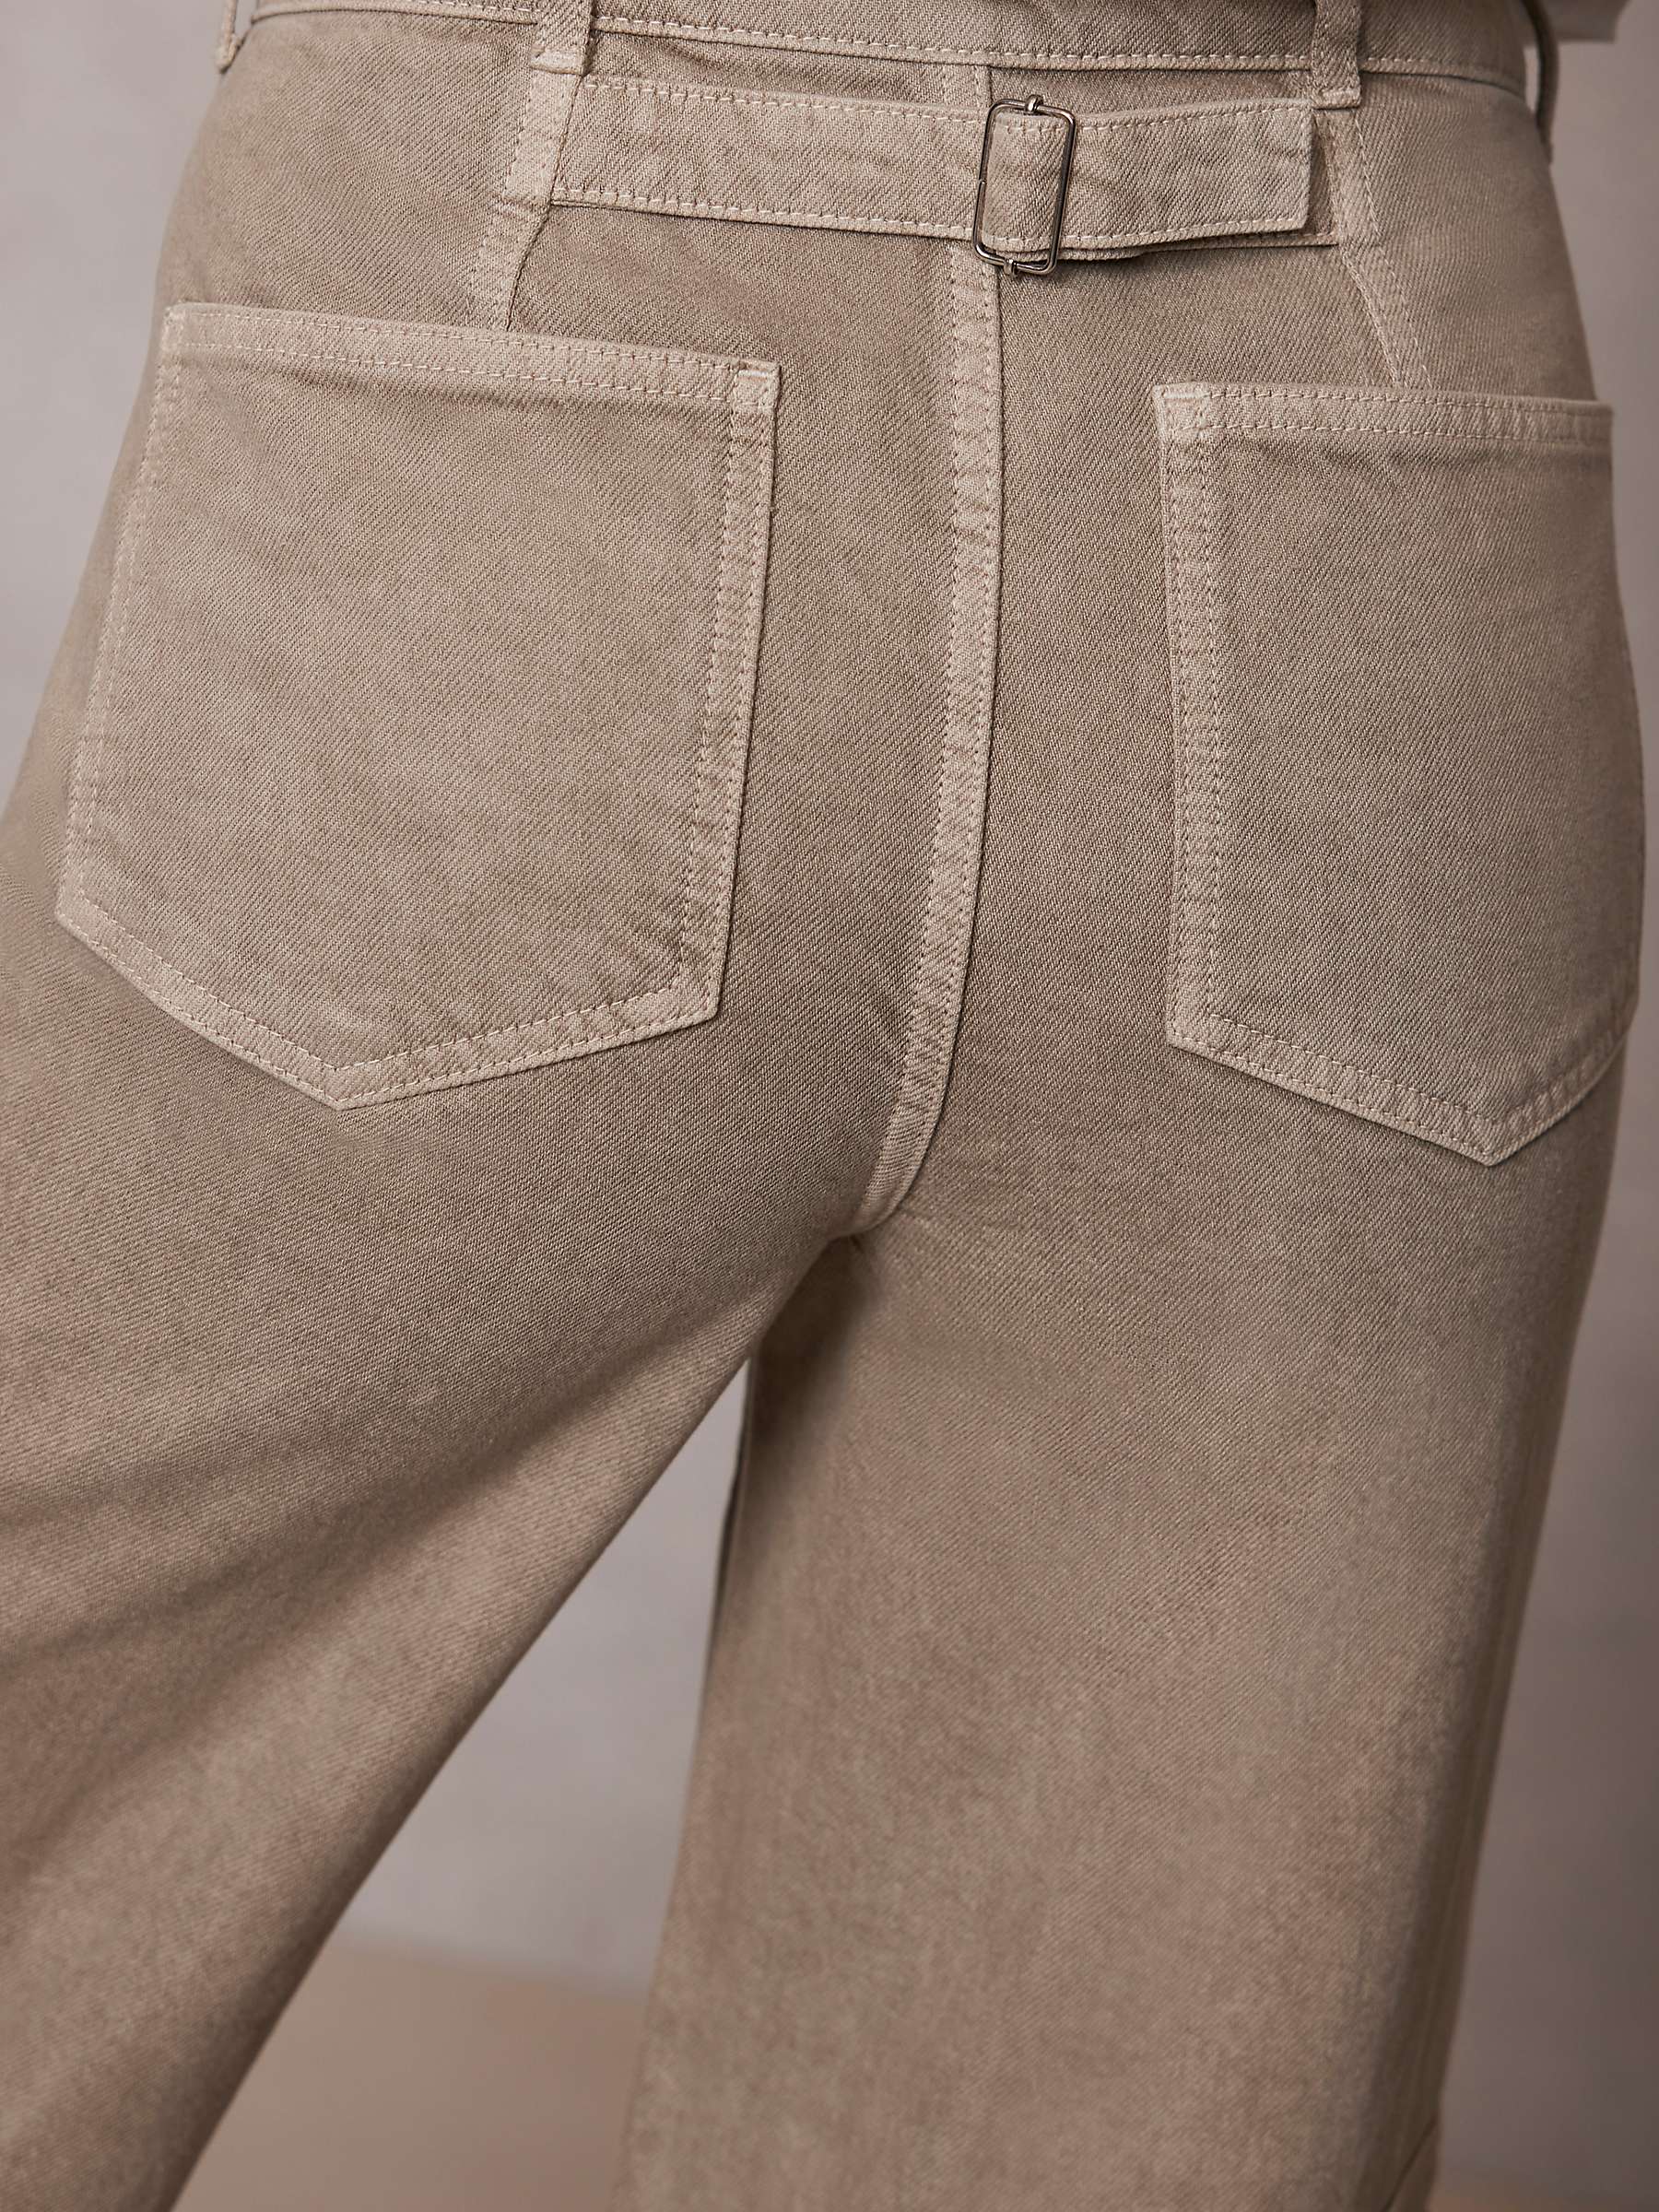 Buy Mint Velvet Wide Leg Utility Jeans, Khaki Online at johnlewis.com